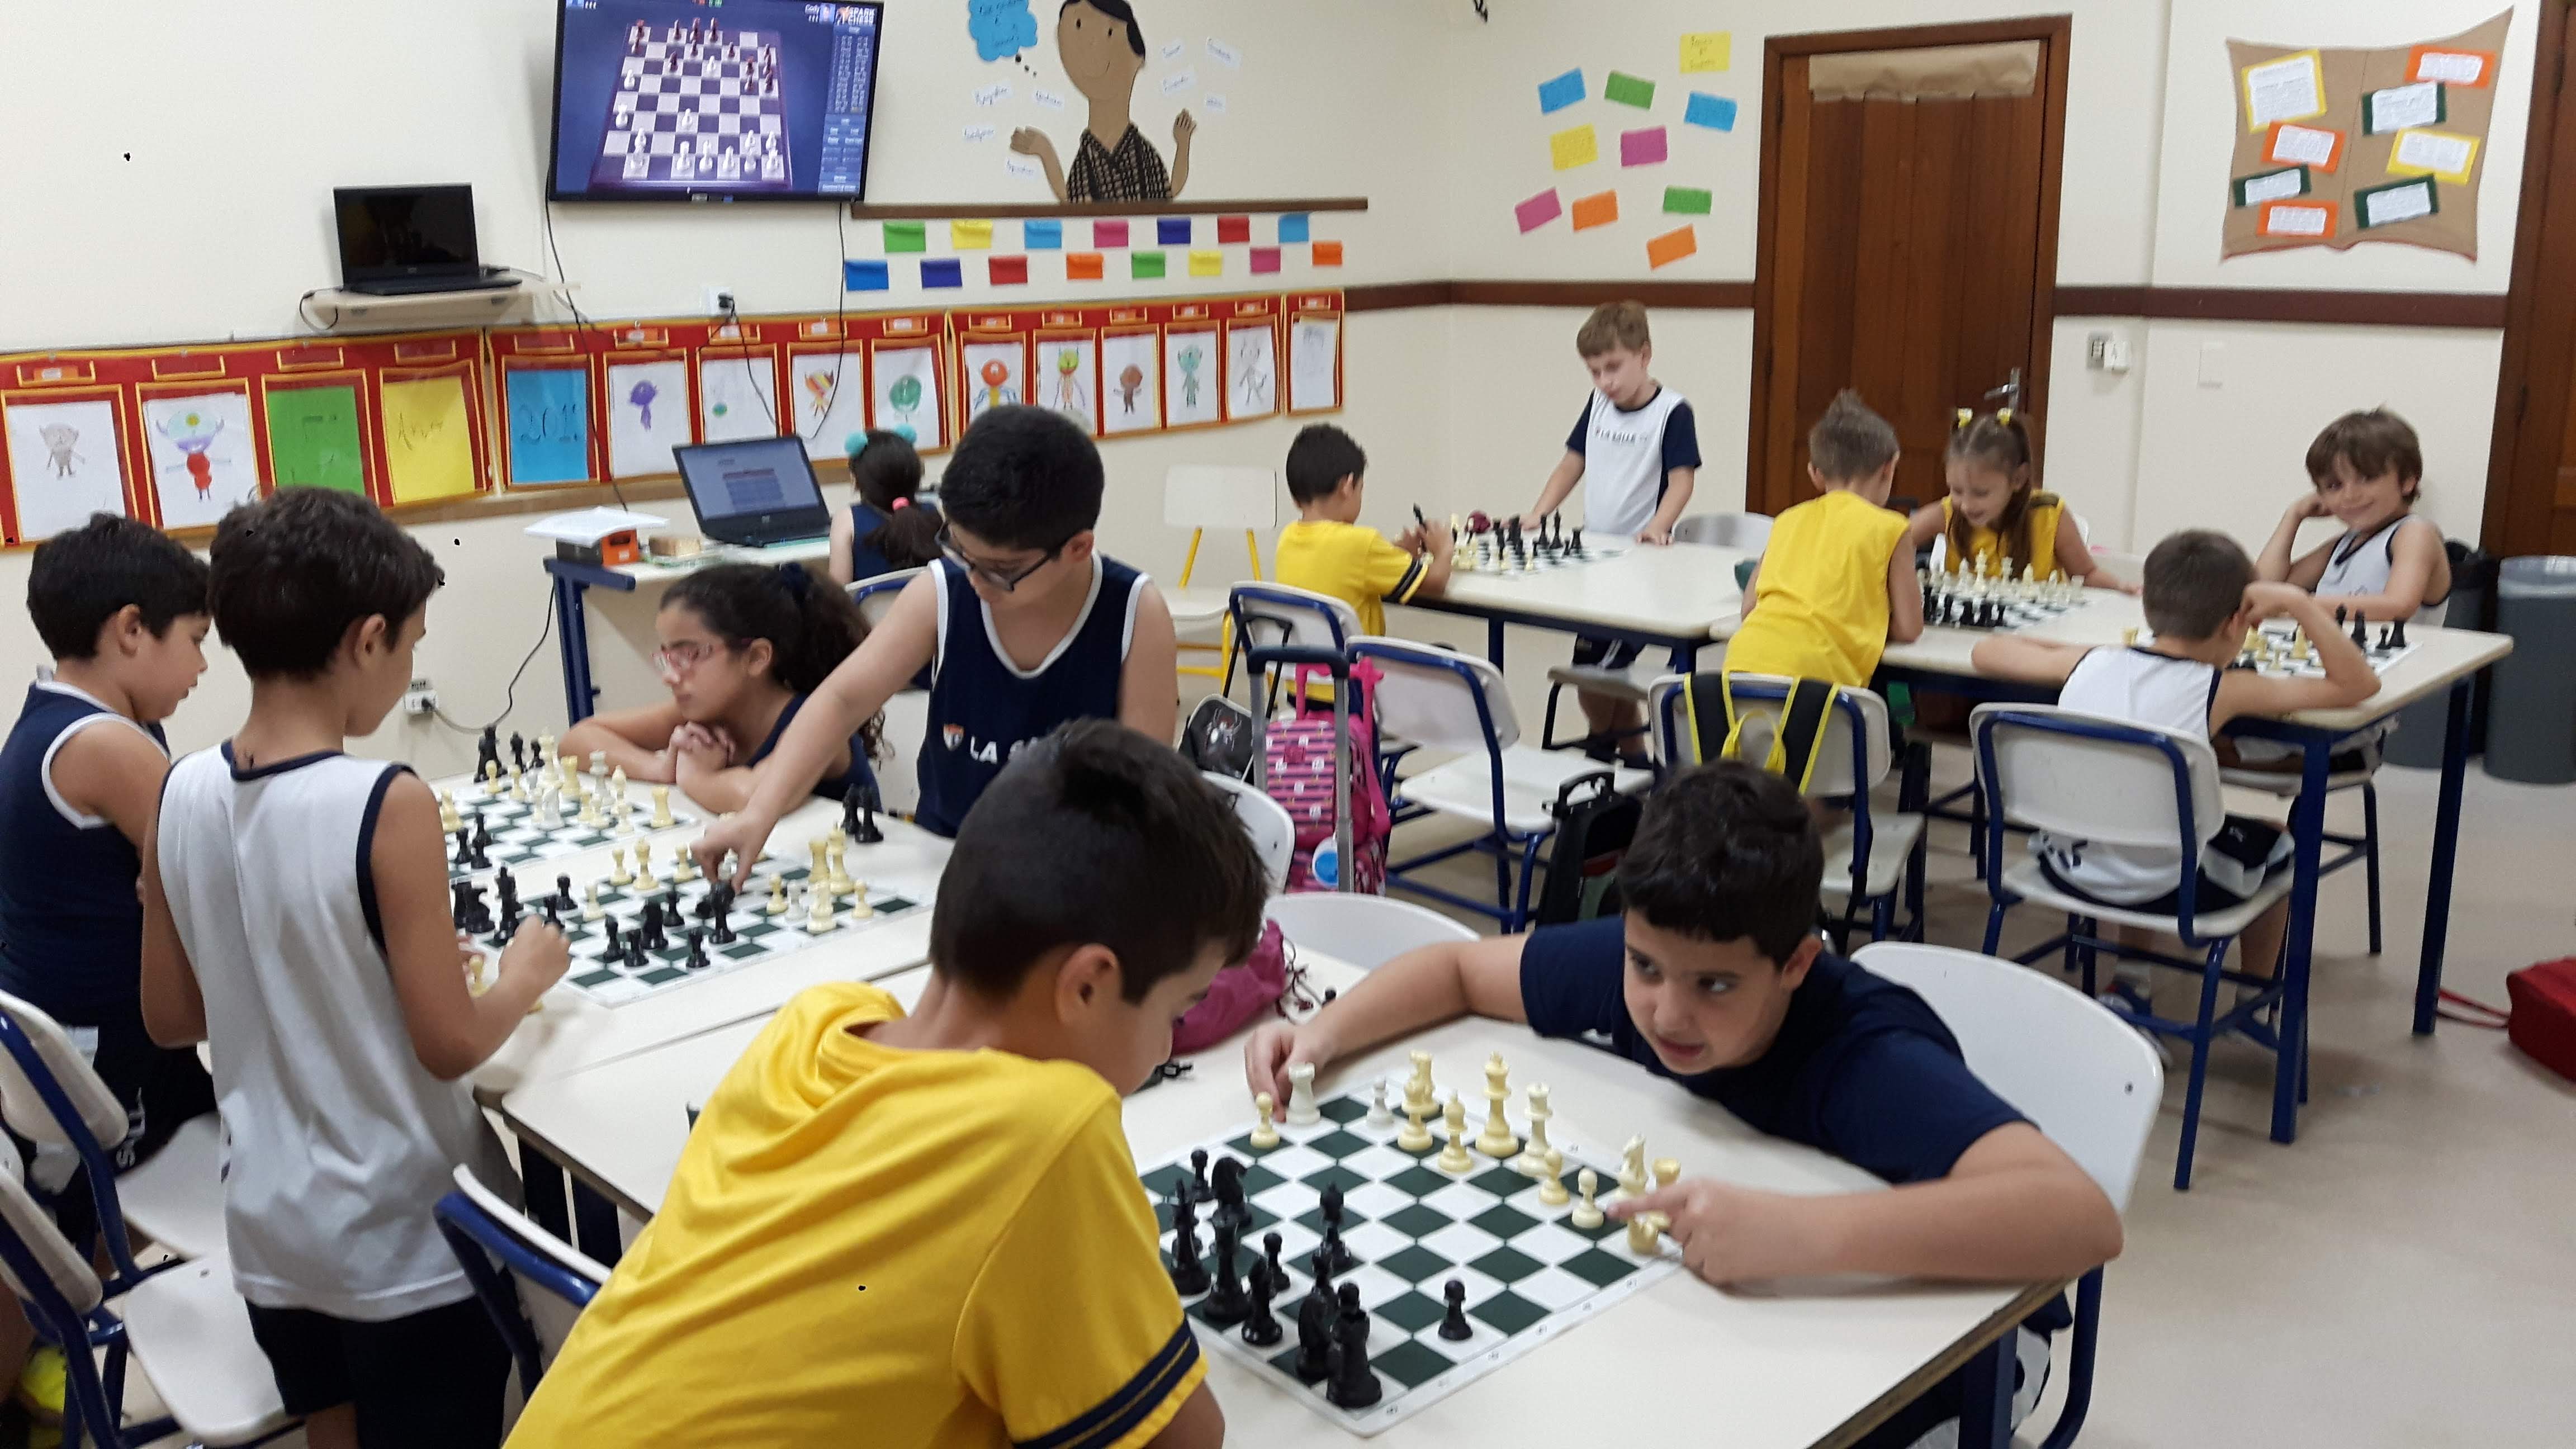 Curso de Xadrez para iniciantes  Xadrez, Escola religiosa, Peças